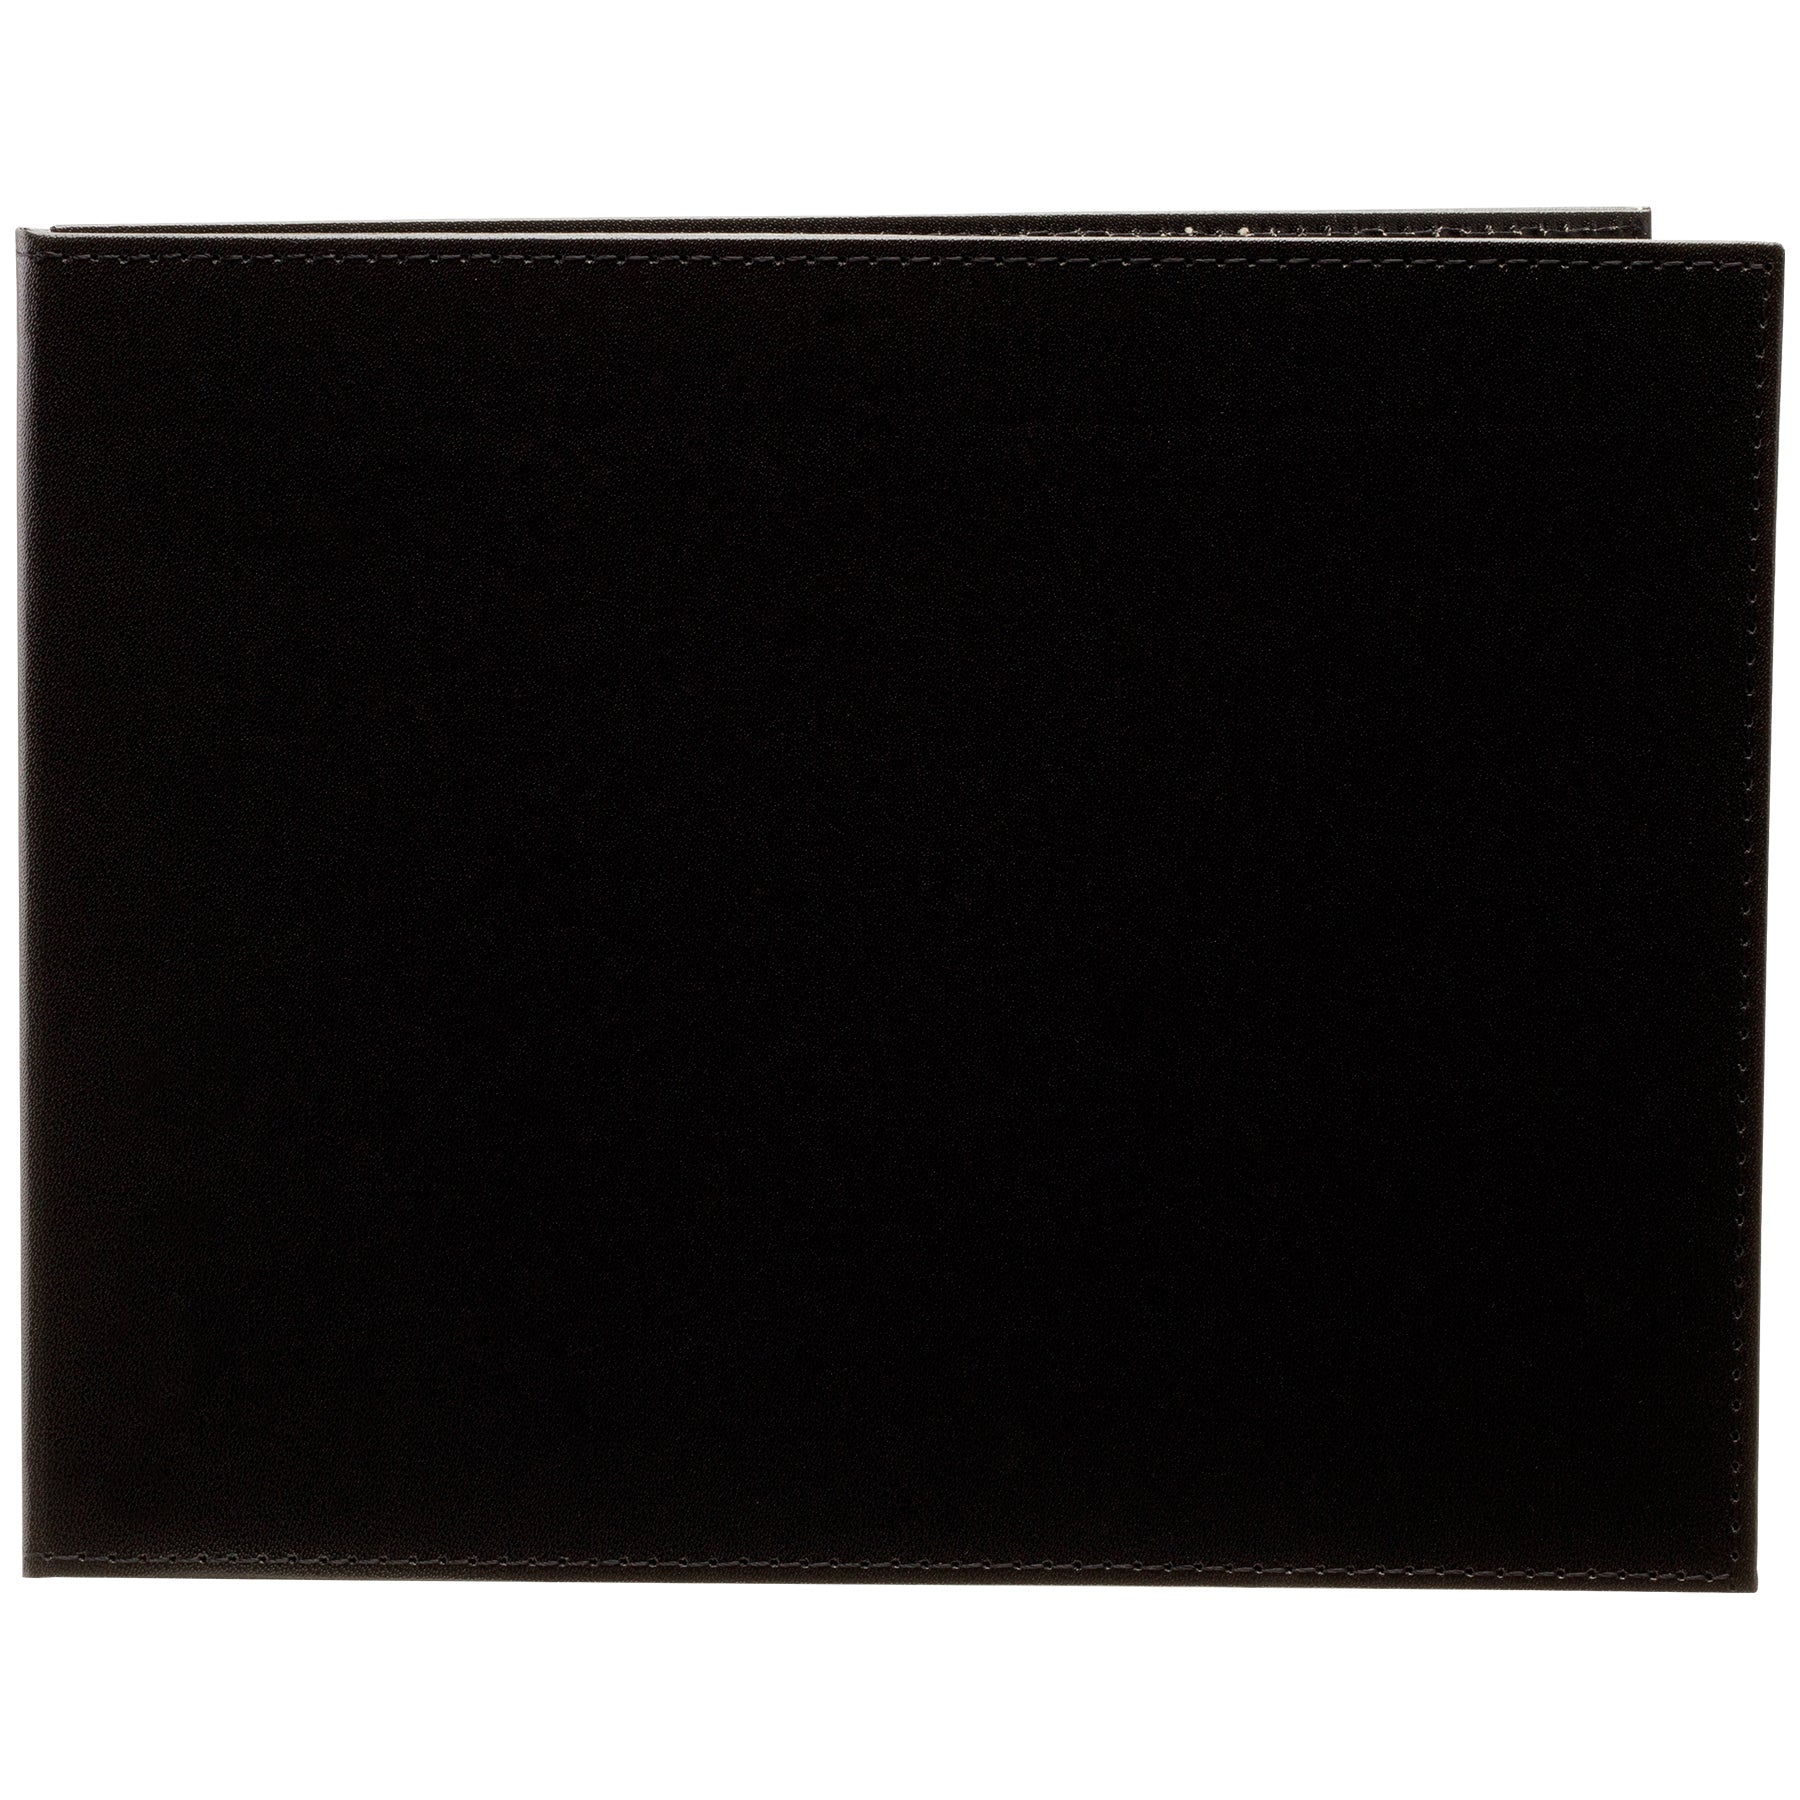 Folio de 2 fotografías en polipiel negra